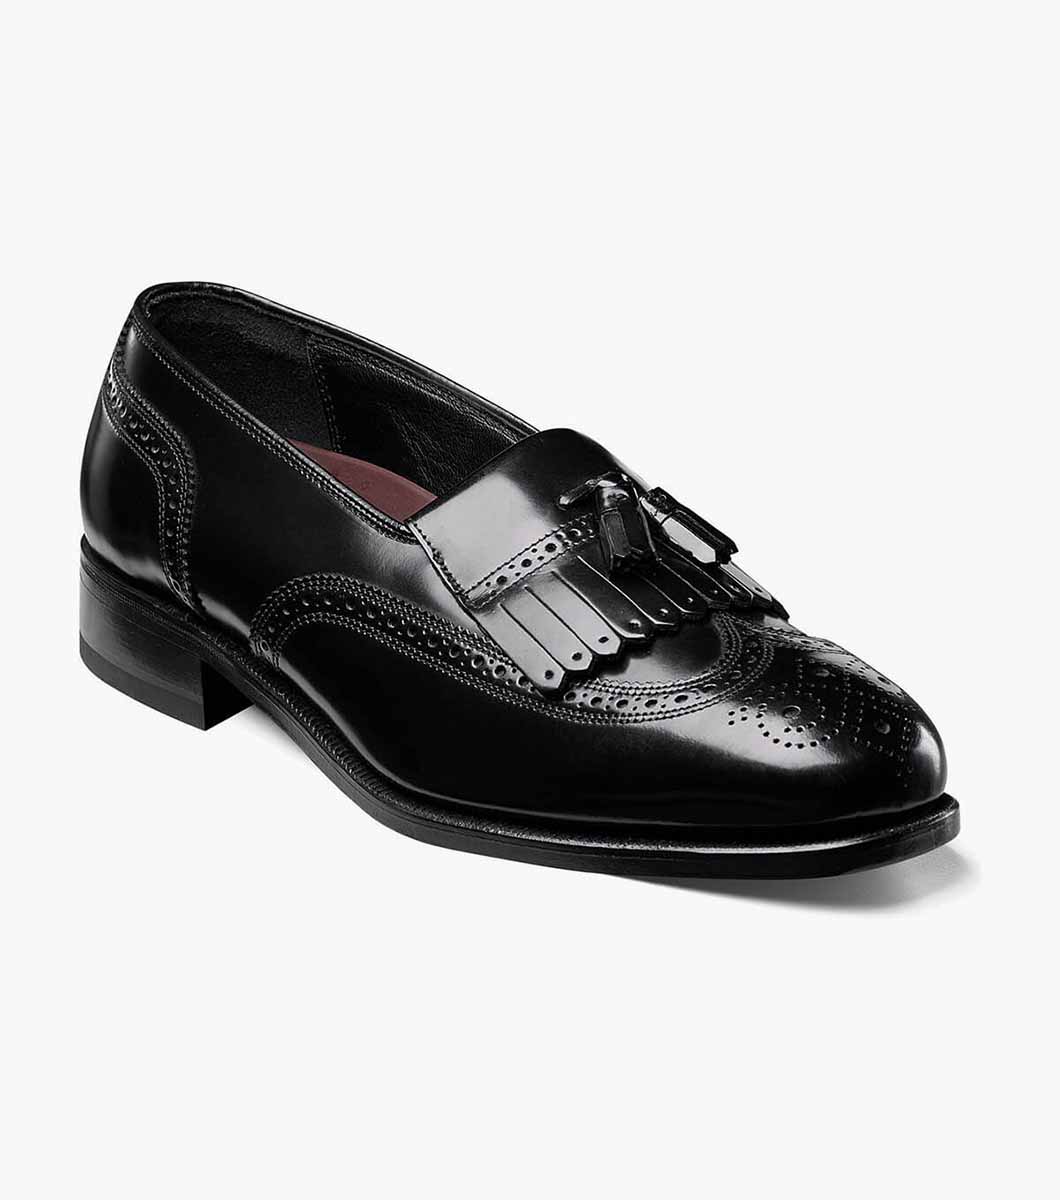 Lexington Wingtip Loafer Men’s Dress Shoes | Florsheim.com